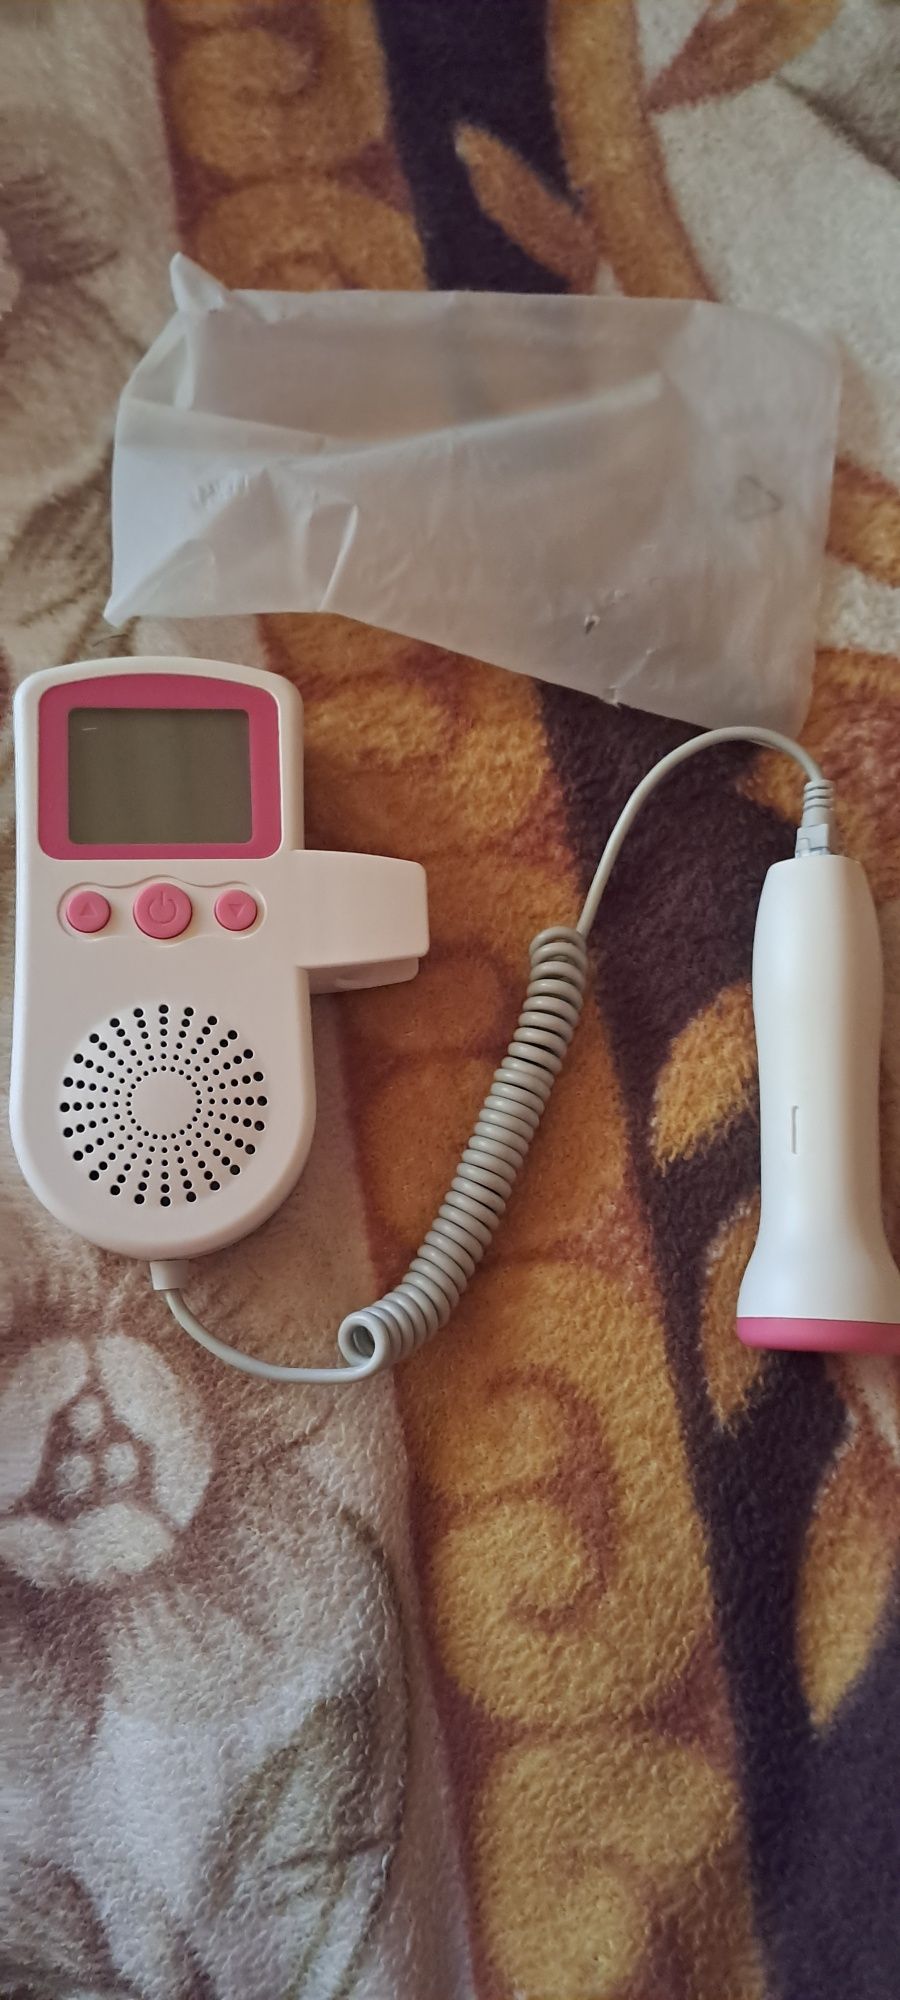 Апарат для прослуховування серцебиття у дитини (фатальний доплер)